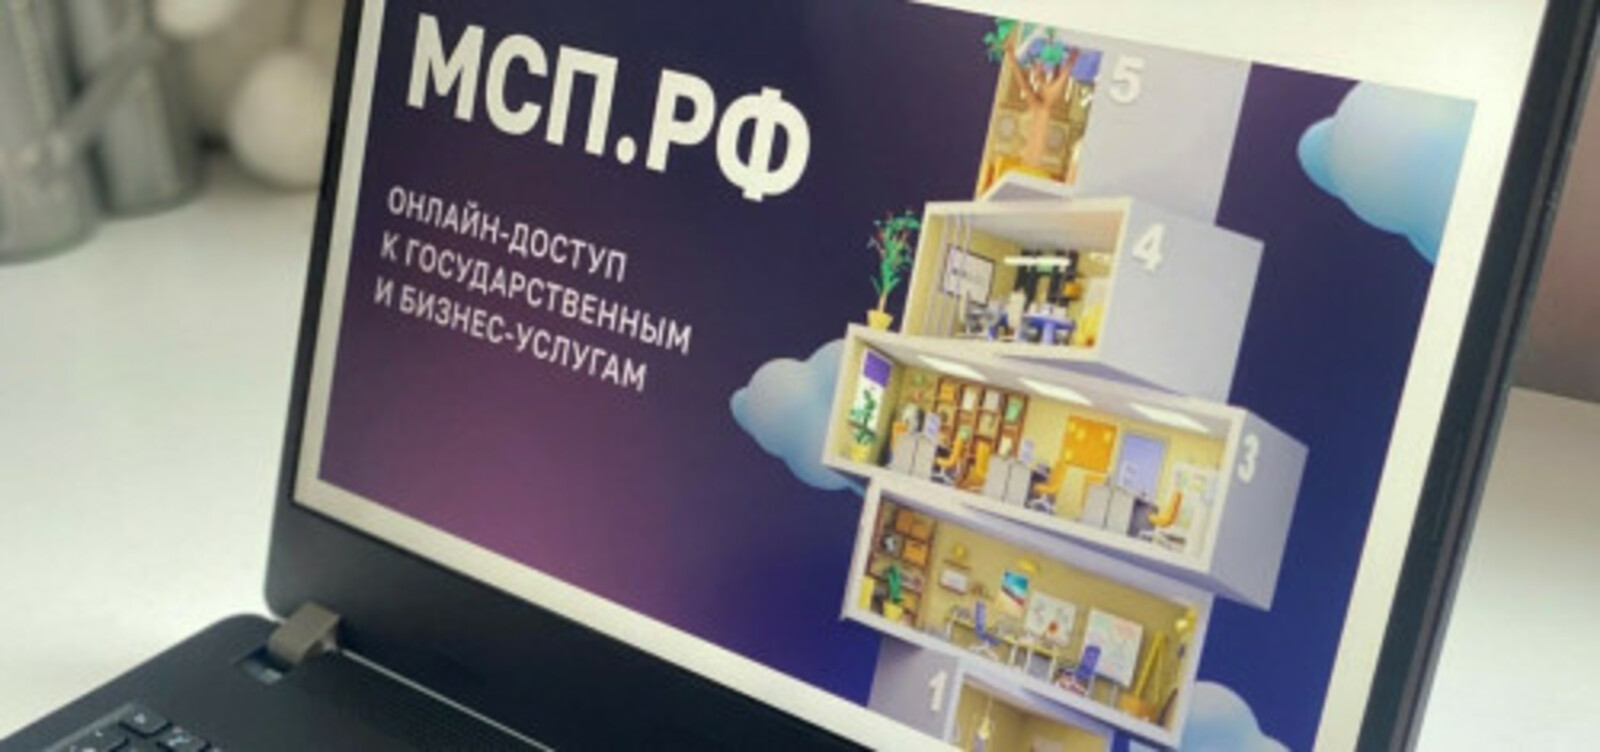 Сервисами и продуктами Цифровой платформы МСП.РФ за первый год ее работы воспользовались свыше 8 тыс. предпринимателей из Башкортостана